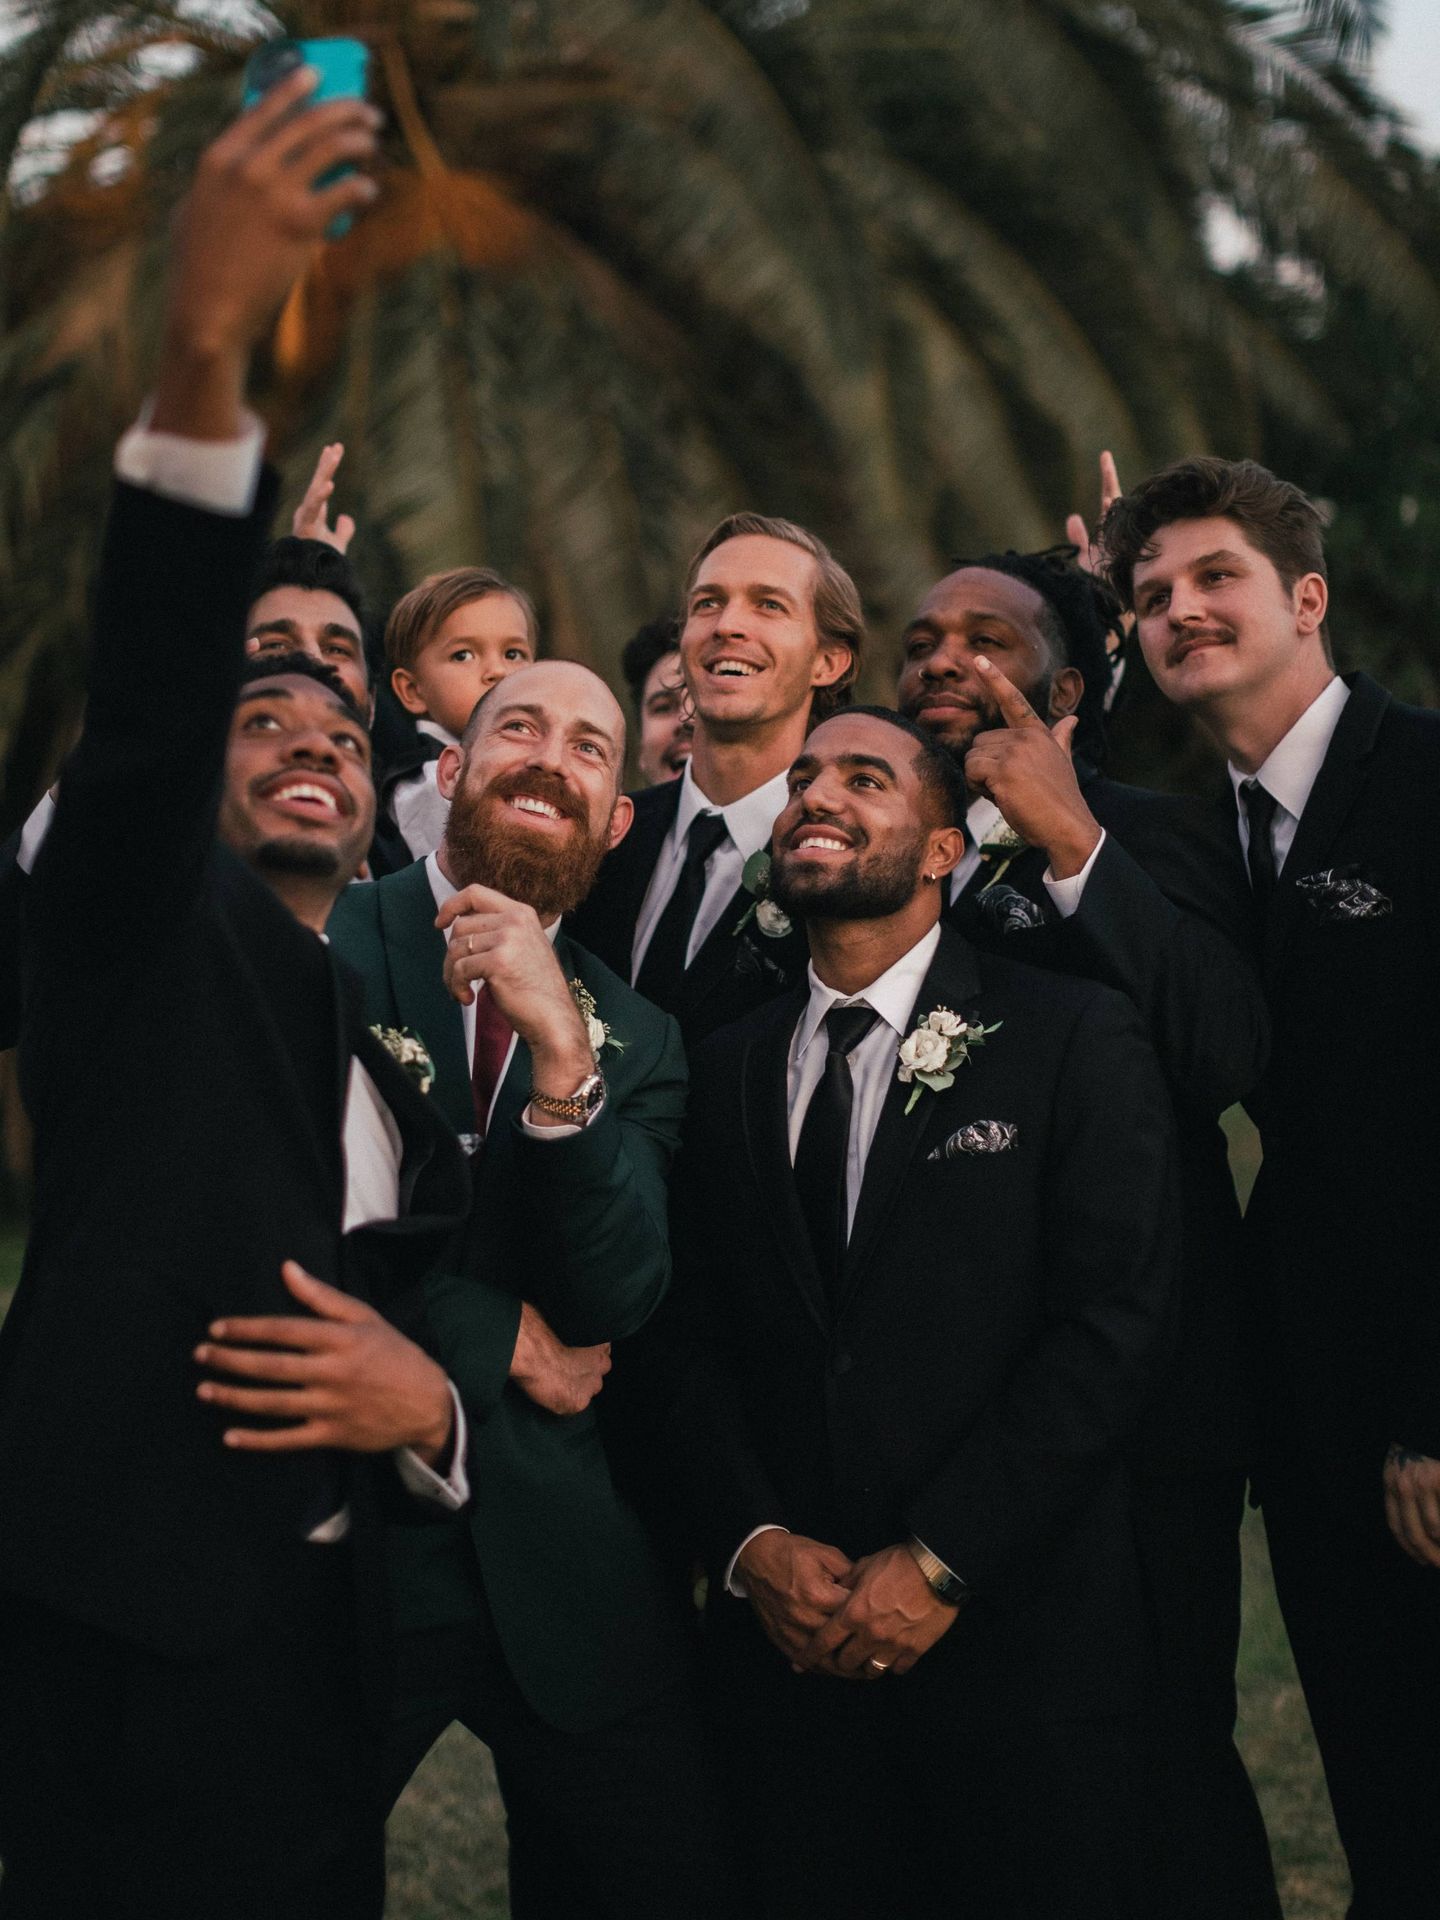 Selfie en una boda. (Fotografía de Jakob Owens para Unsplash)